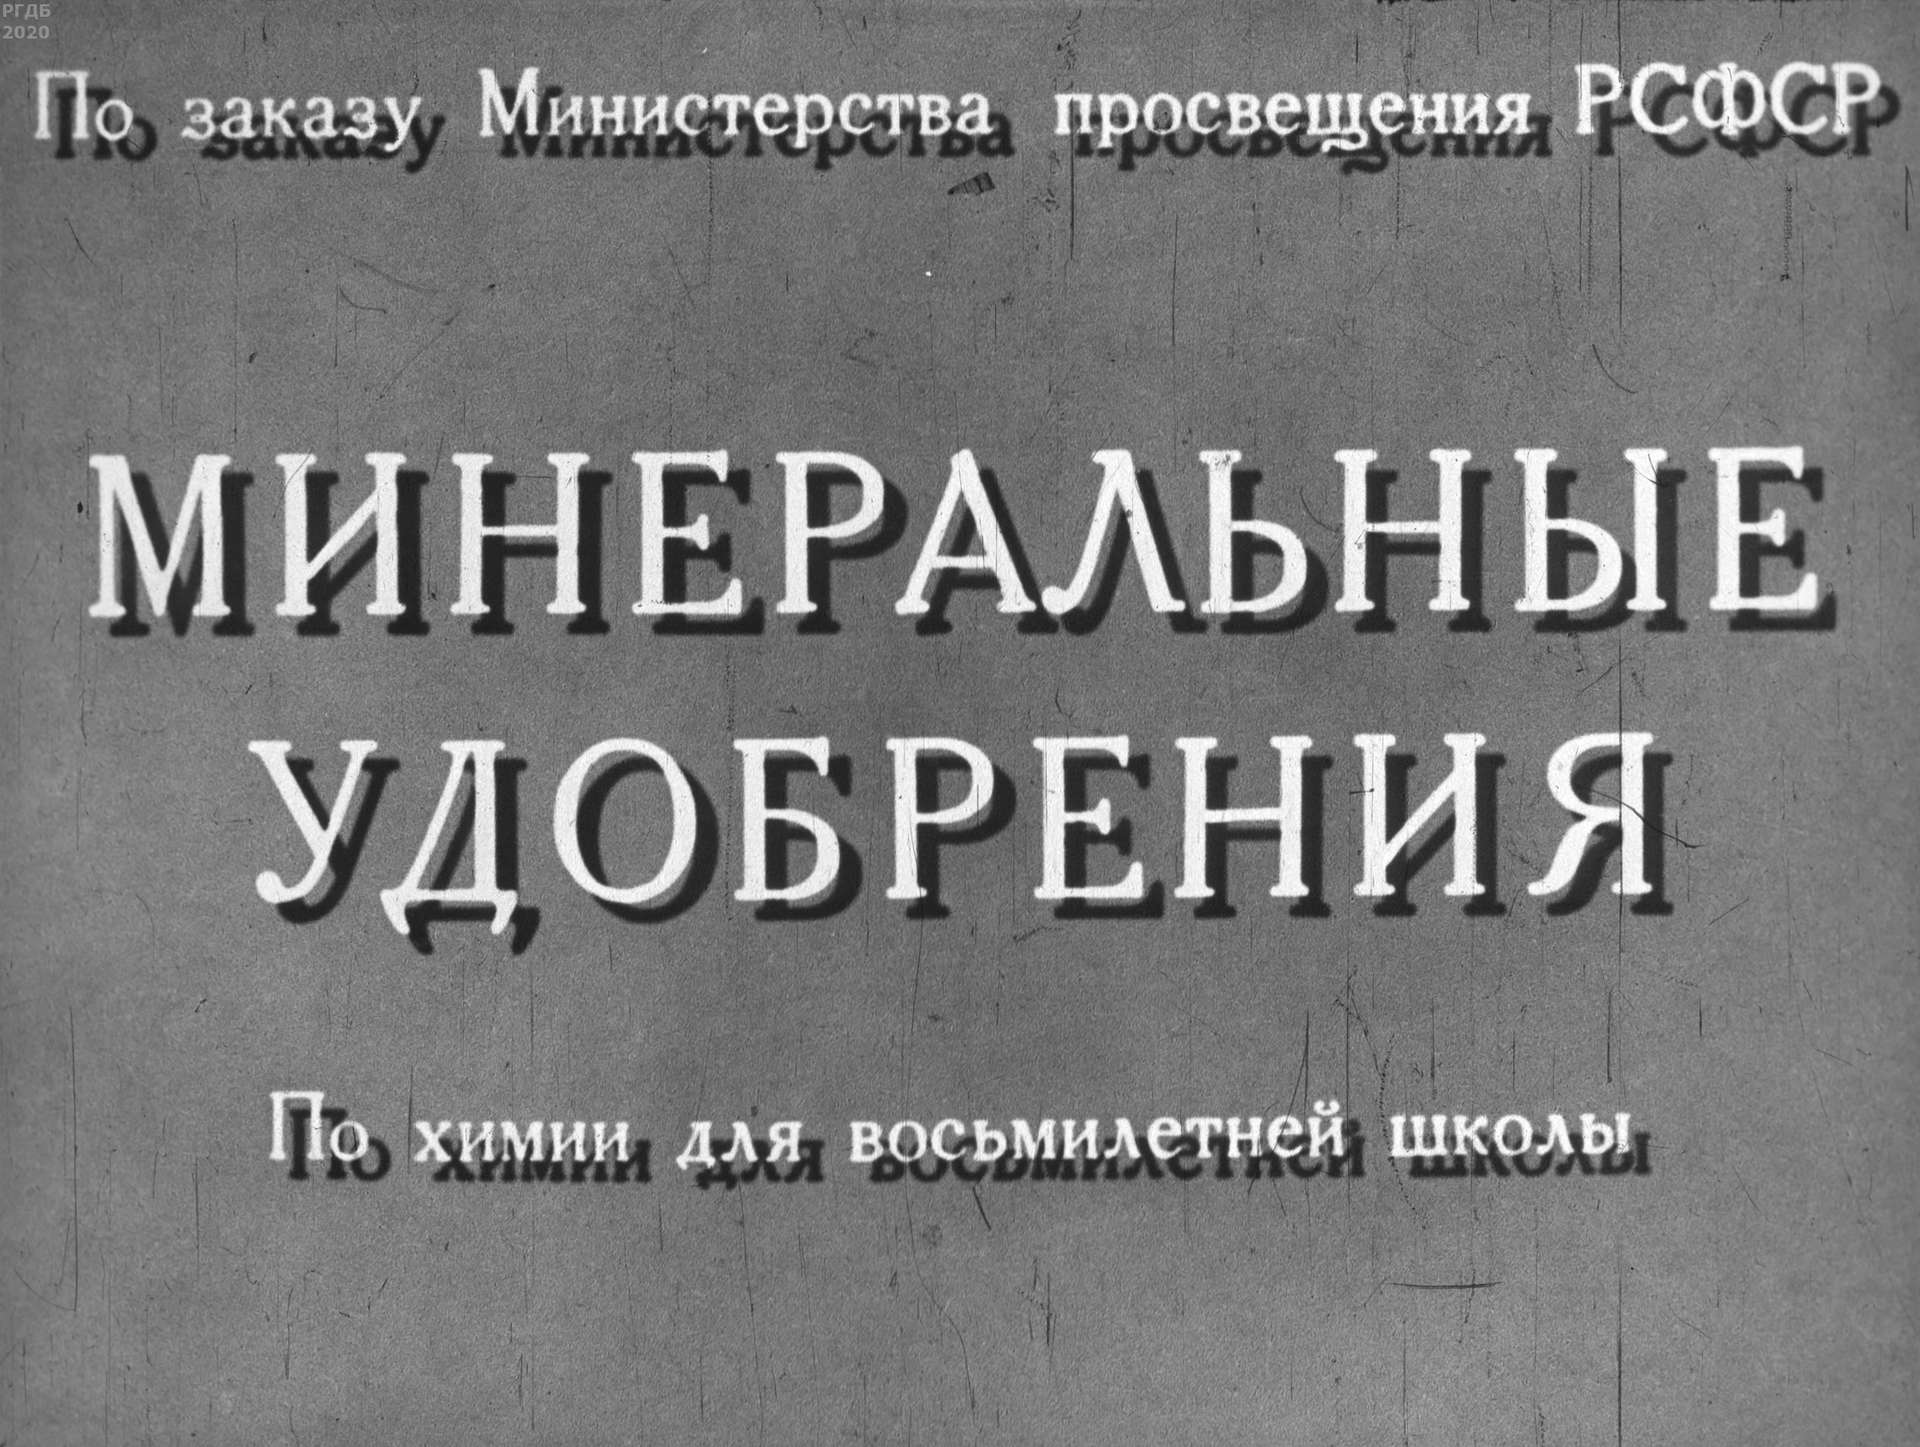 Иванов П. - Минеральные удобрения - 1966